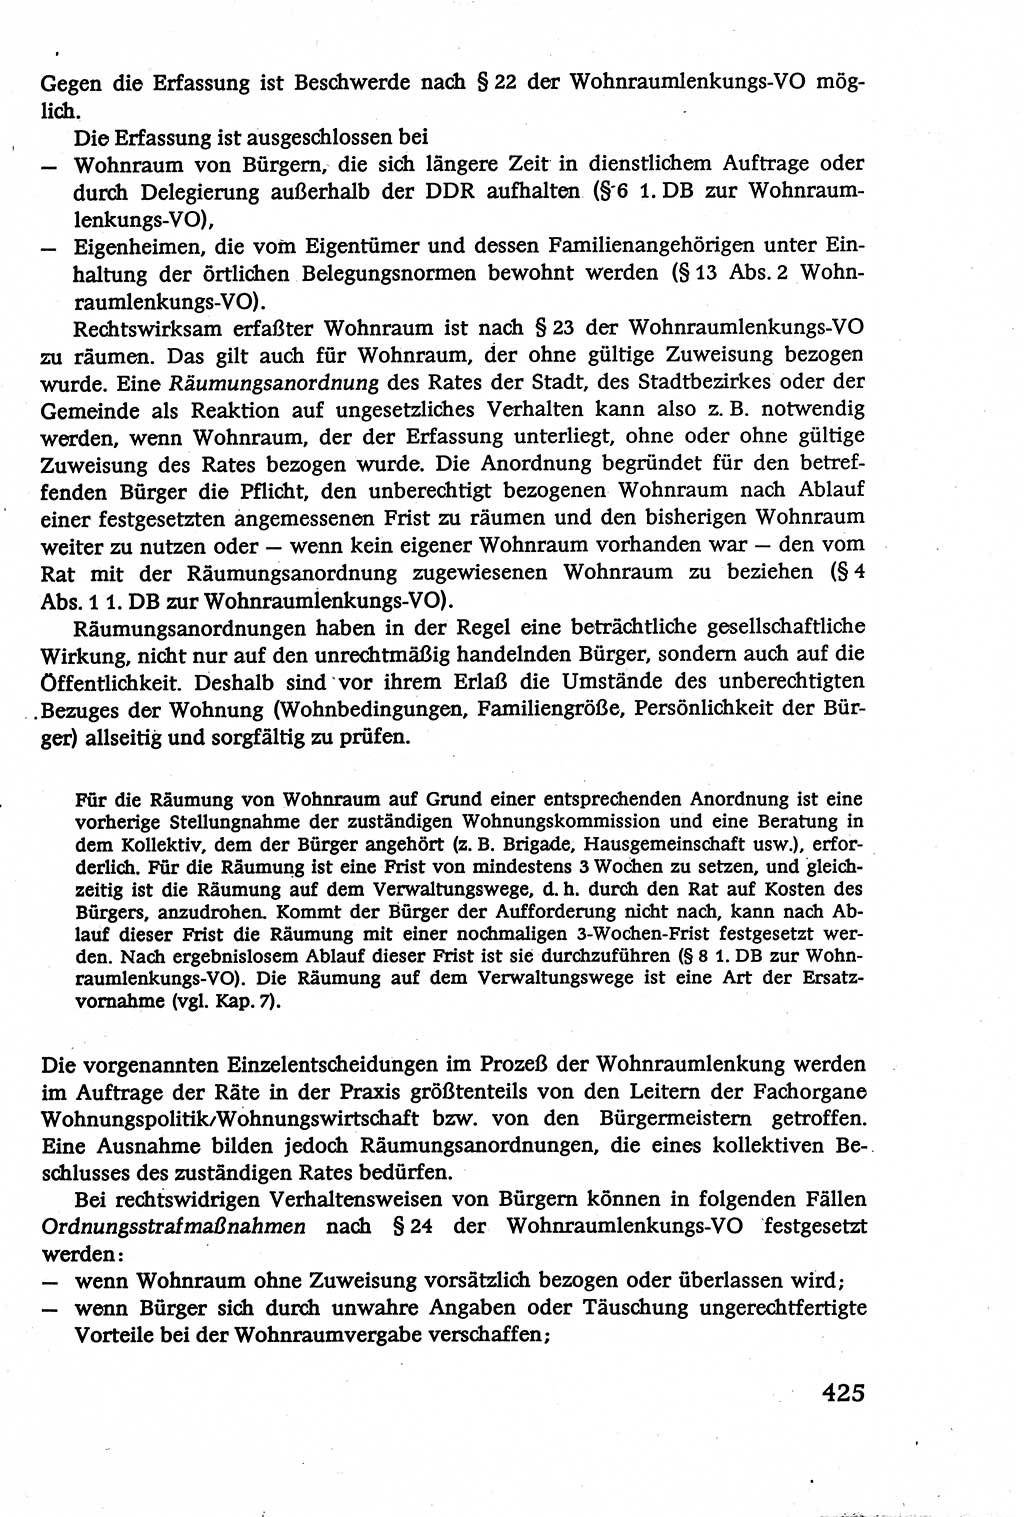 Verwaltungsrecht [Deutsche Demokratische Republik (DDR)], Lehrbuch 1979, Seite 425 (Verw.-R. DDR Lb. 1979, S. 425)